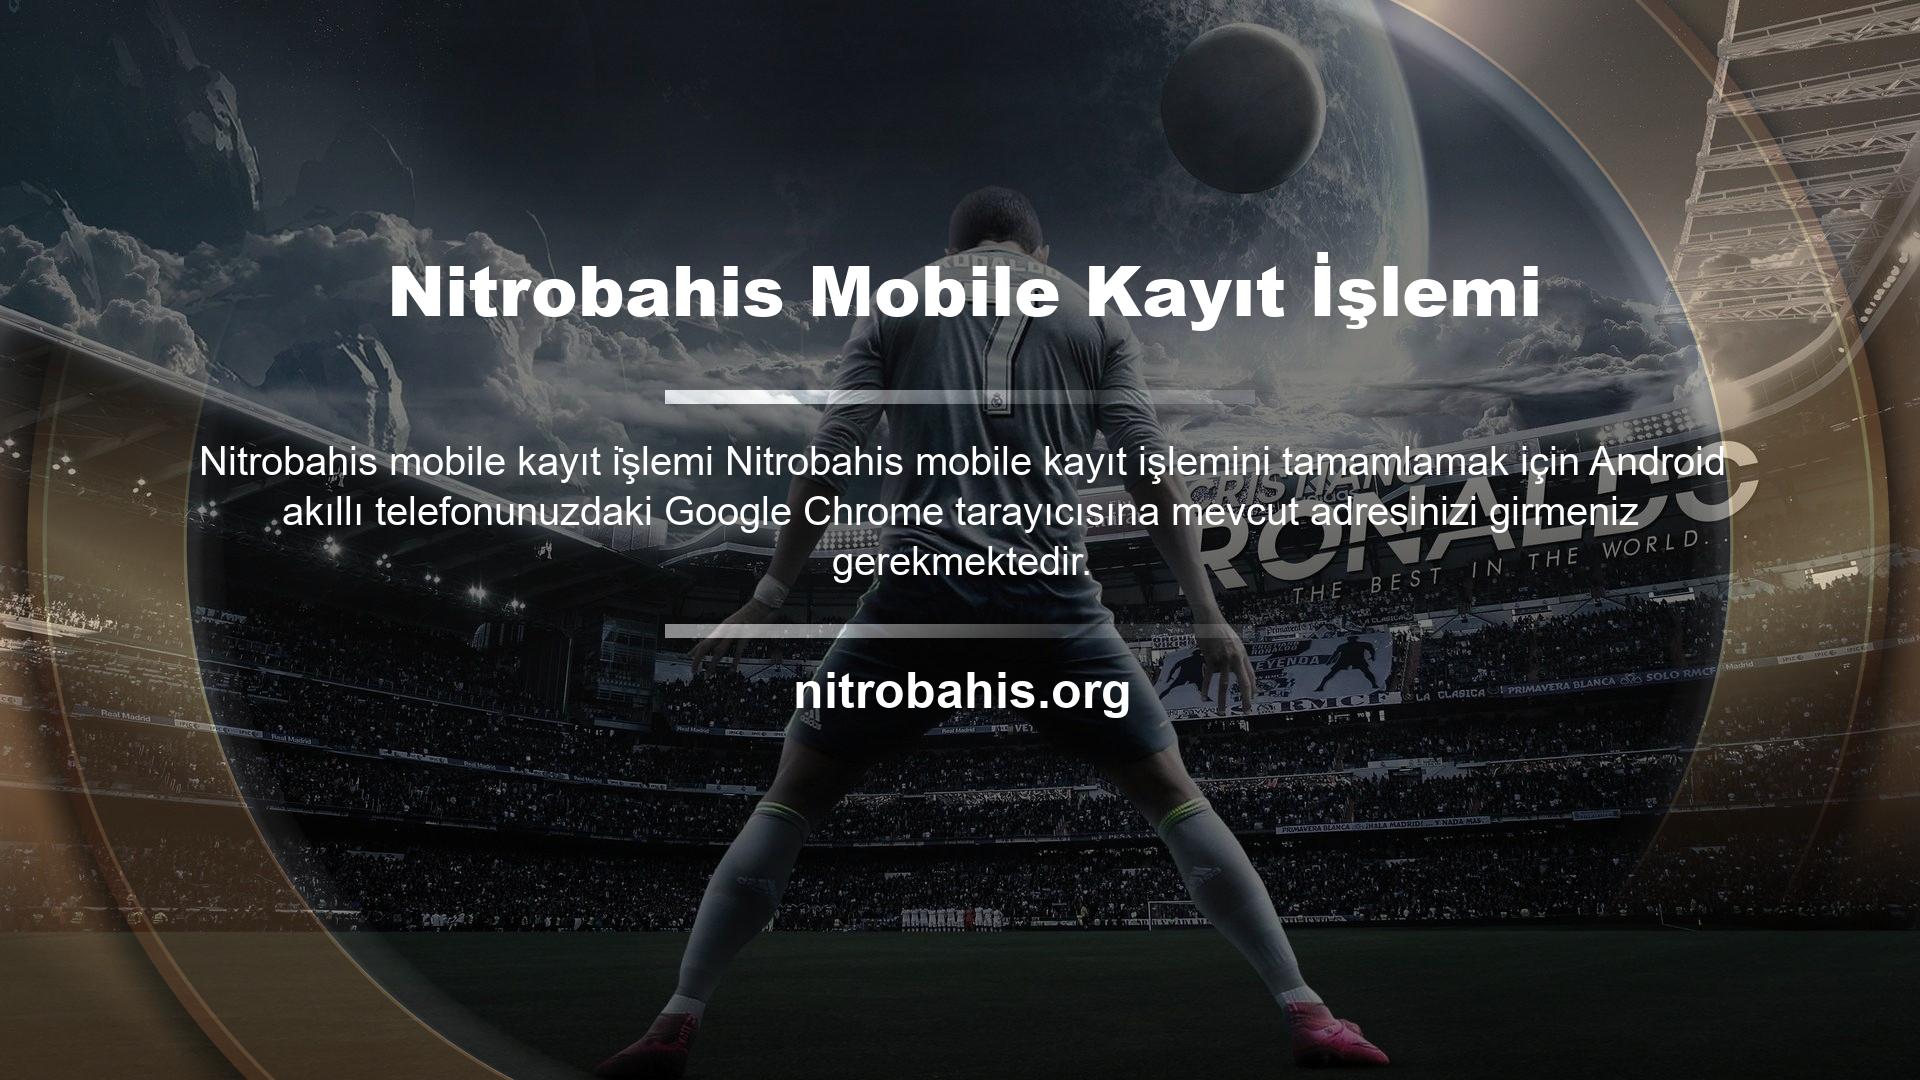 Kayıtlı kullanıcılar, Nitrobahis Android cep telefonu kayıt işlemi aracılığıyla cep telefonlarından bahis oynayabilir ve casino oyunlarına katılabilirler